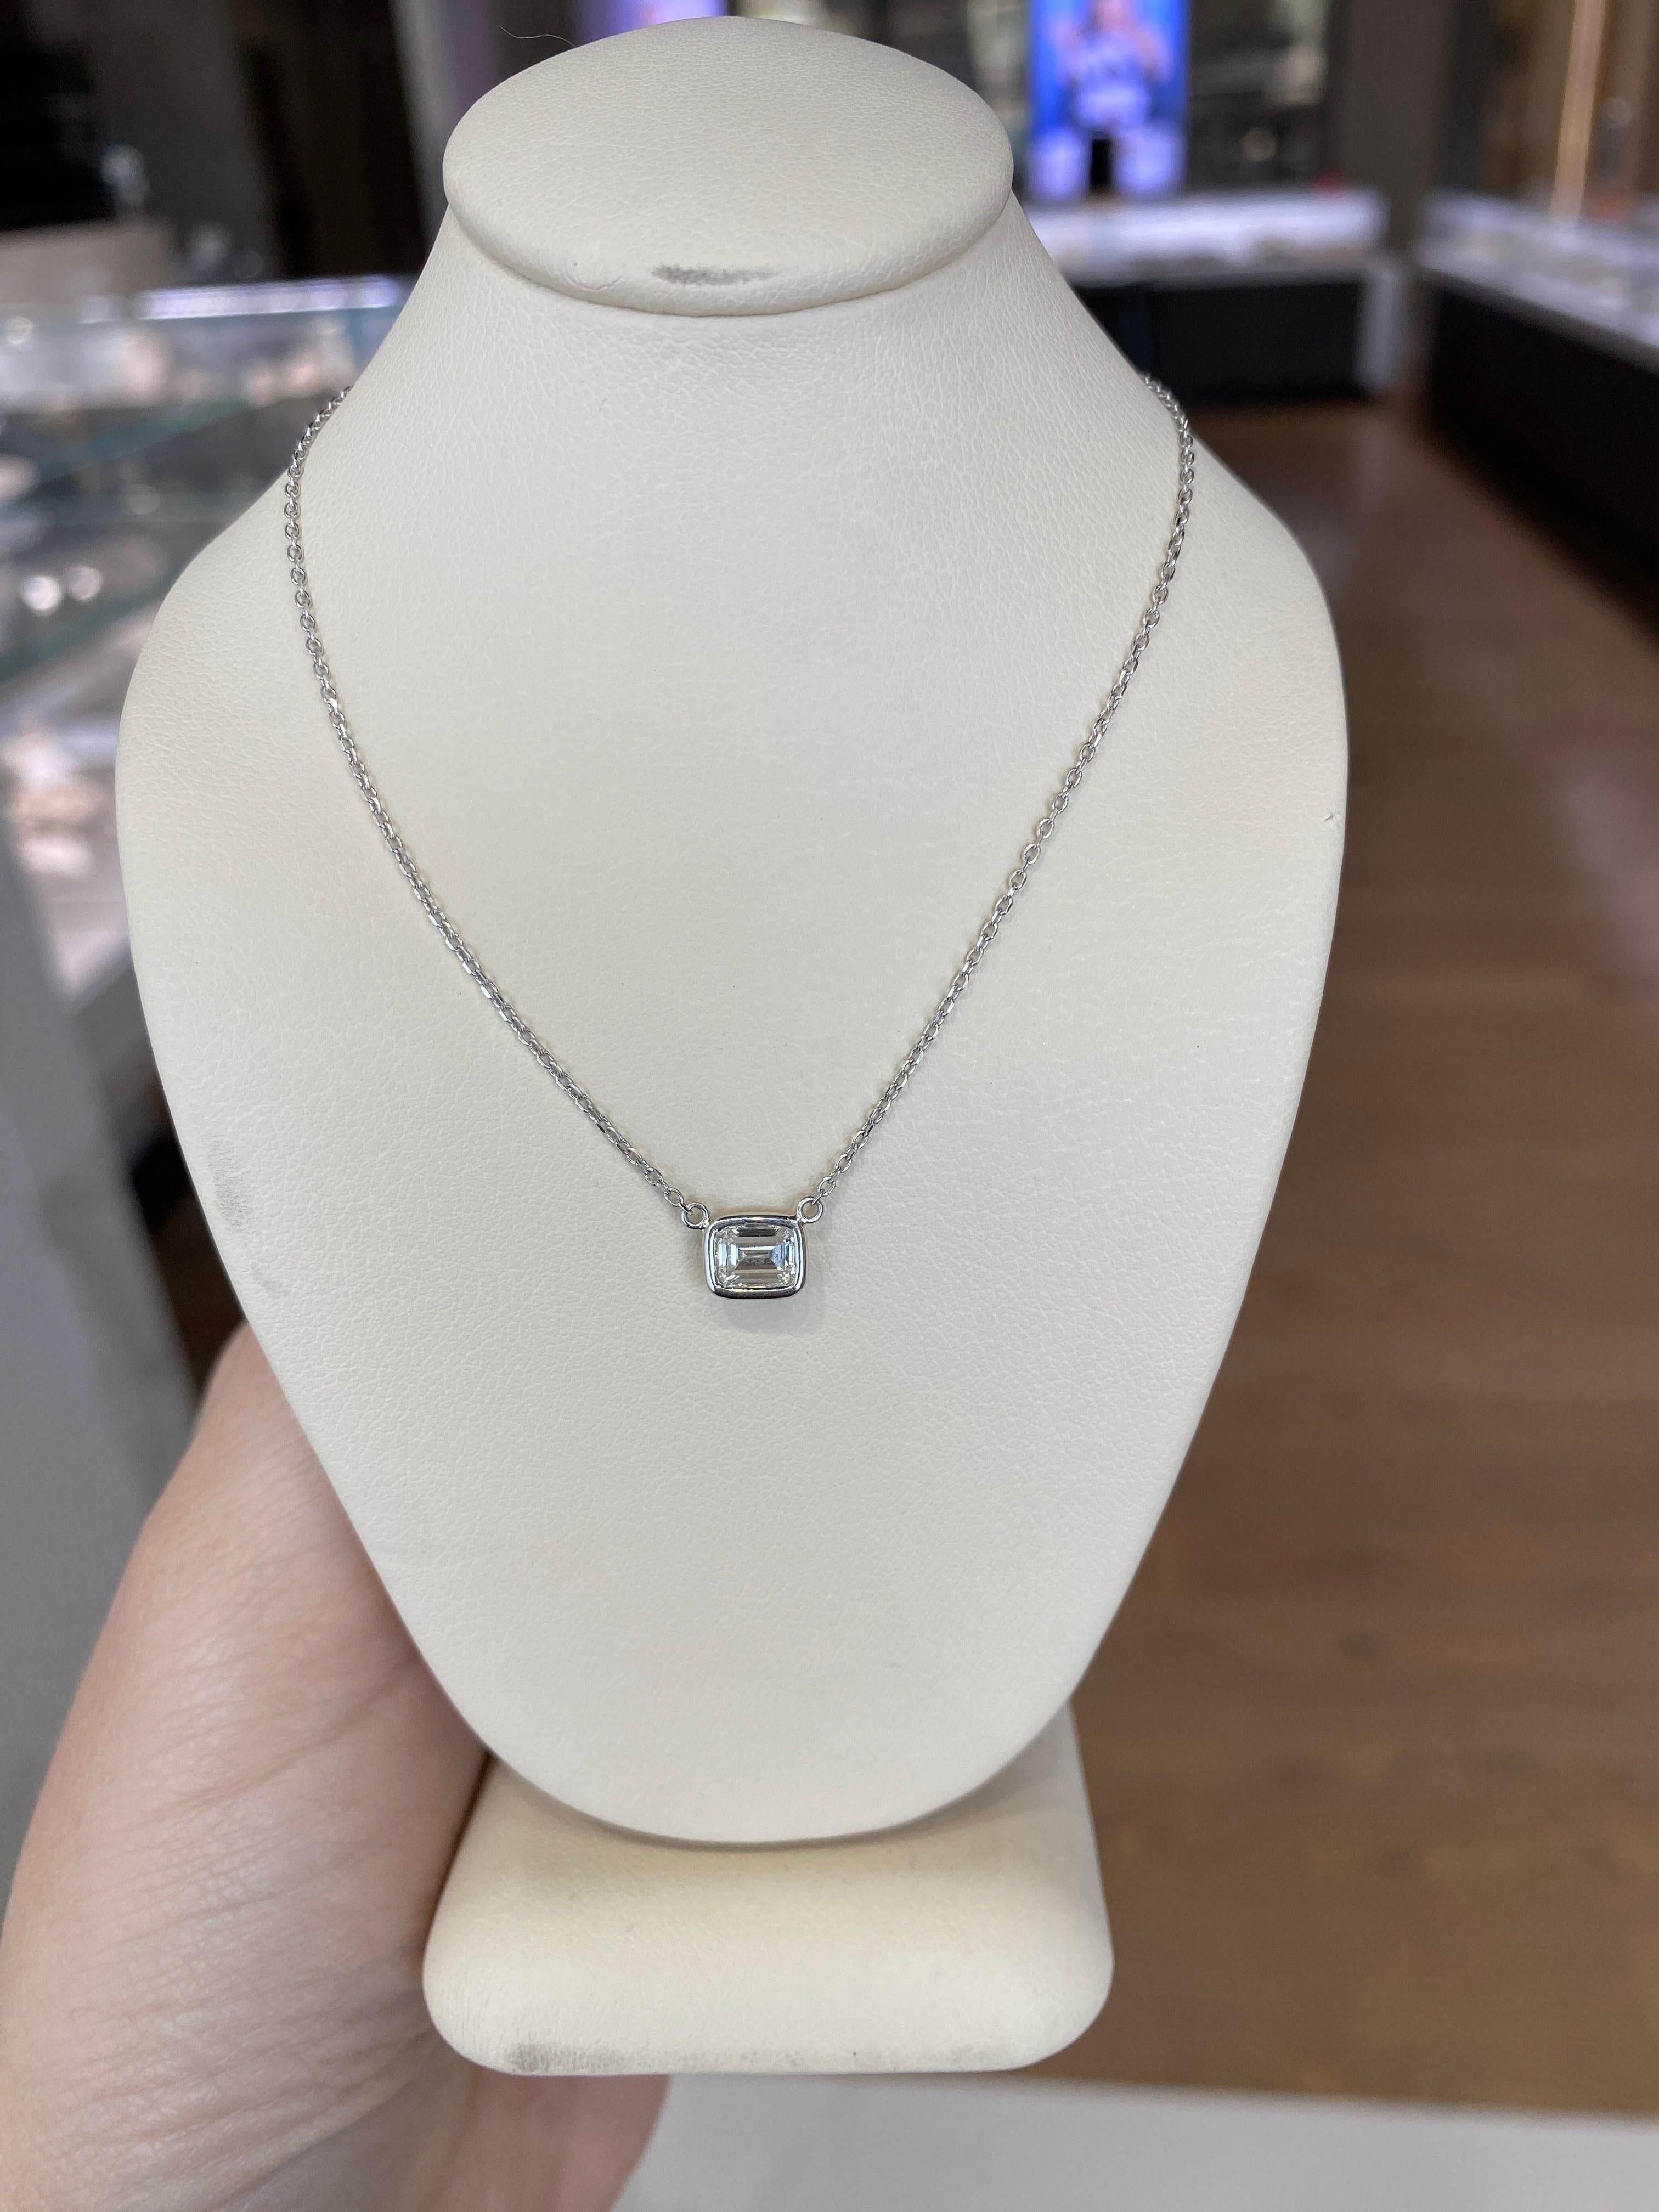 0.44 Carat Natural Emerald Cut Bezel Set Diamond Pendant Necklace 14k White Gold For Sale 9